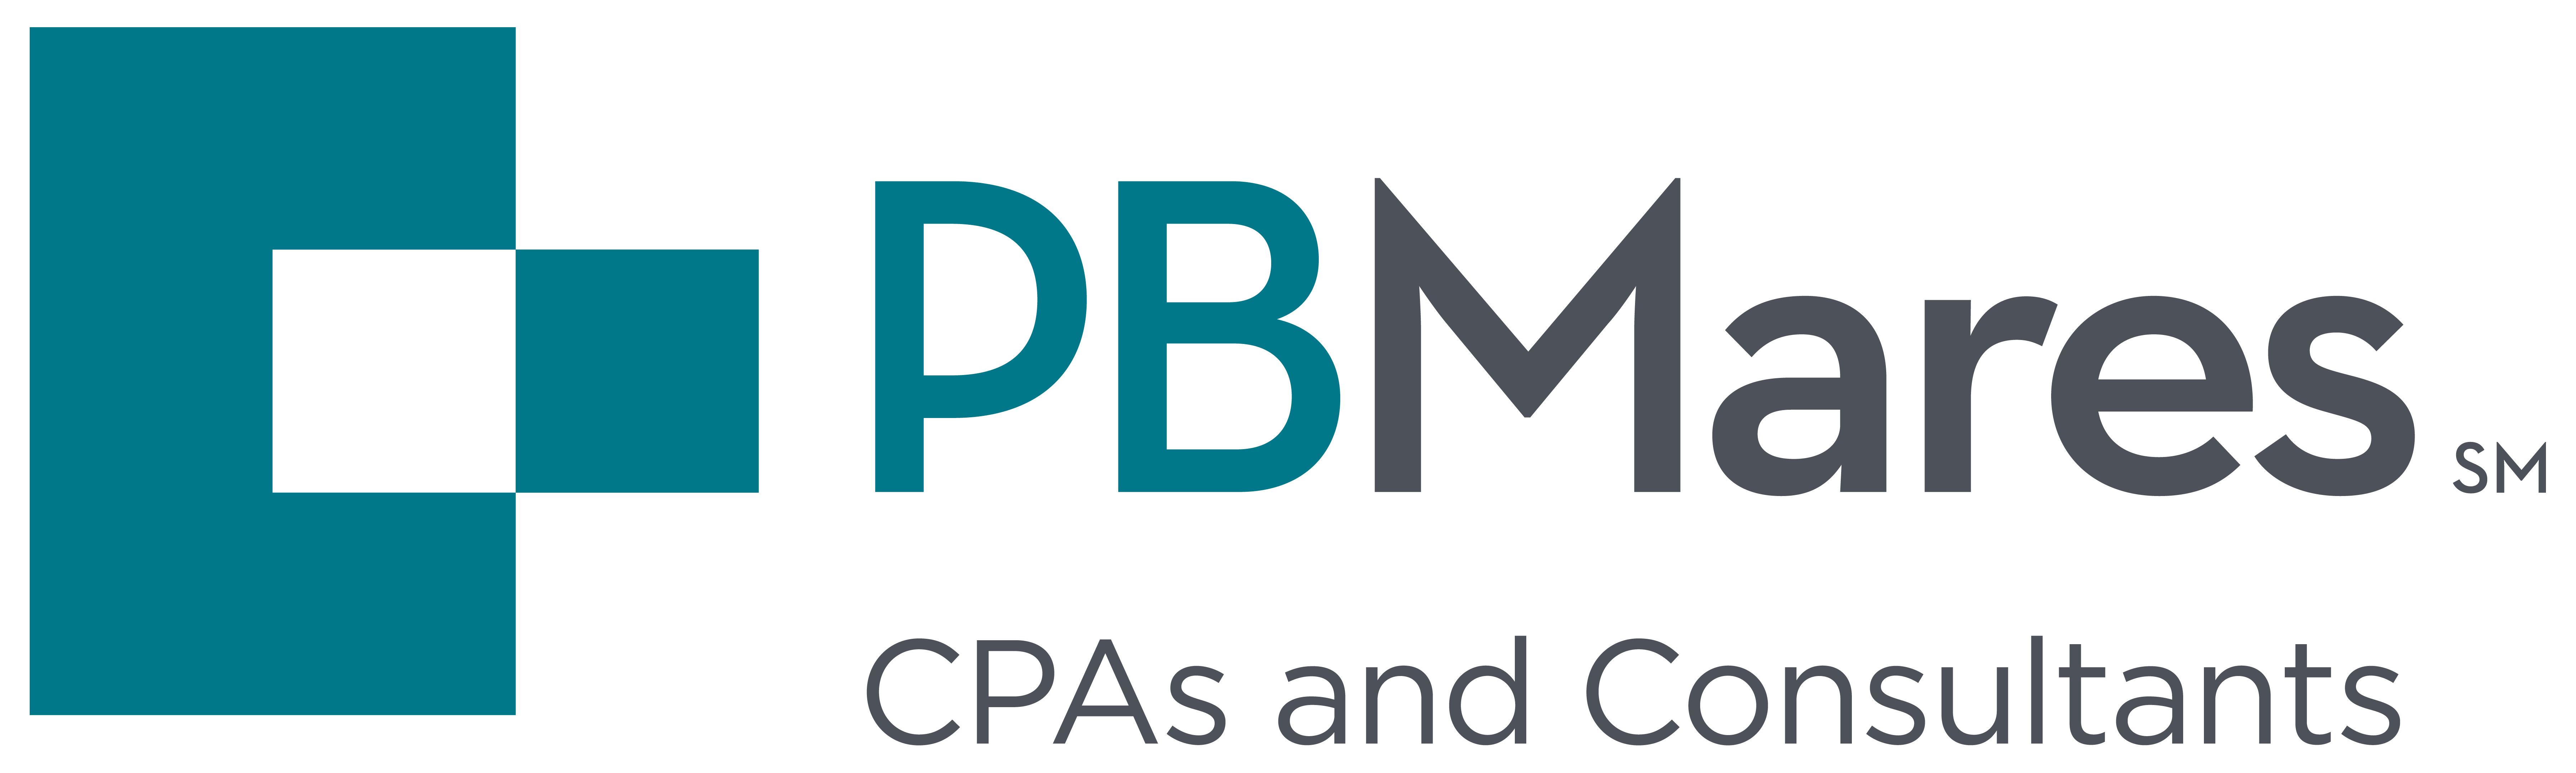 PBM Logo-CPA TAG-RGB-FINAL